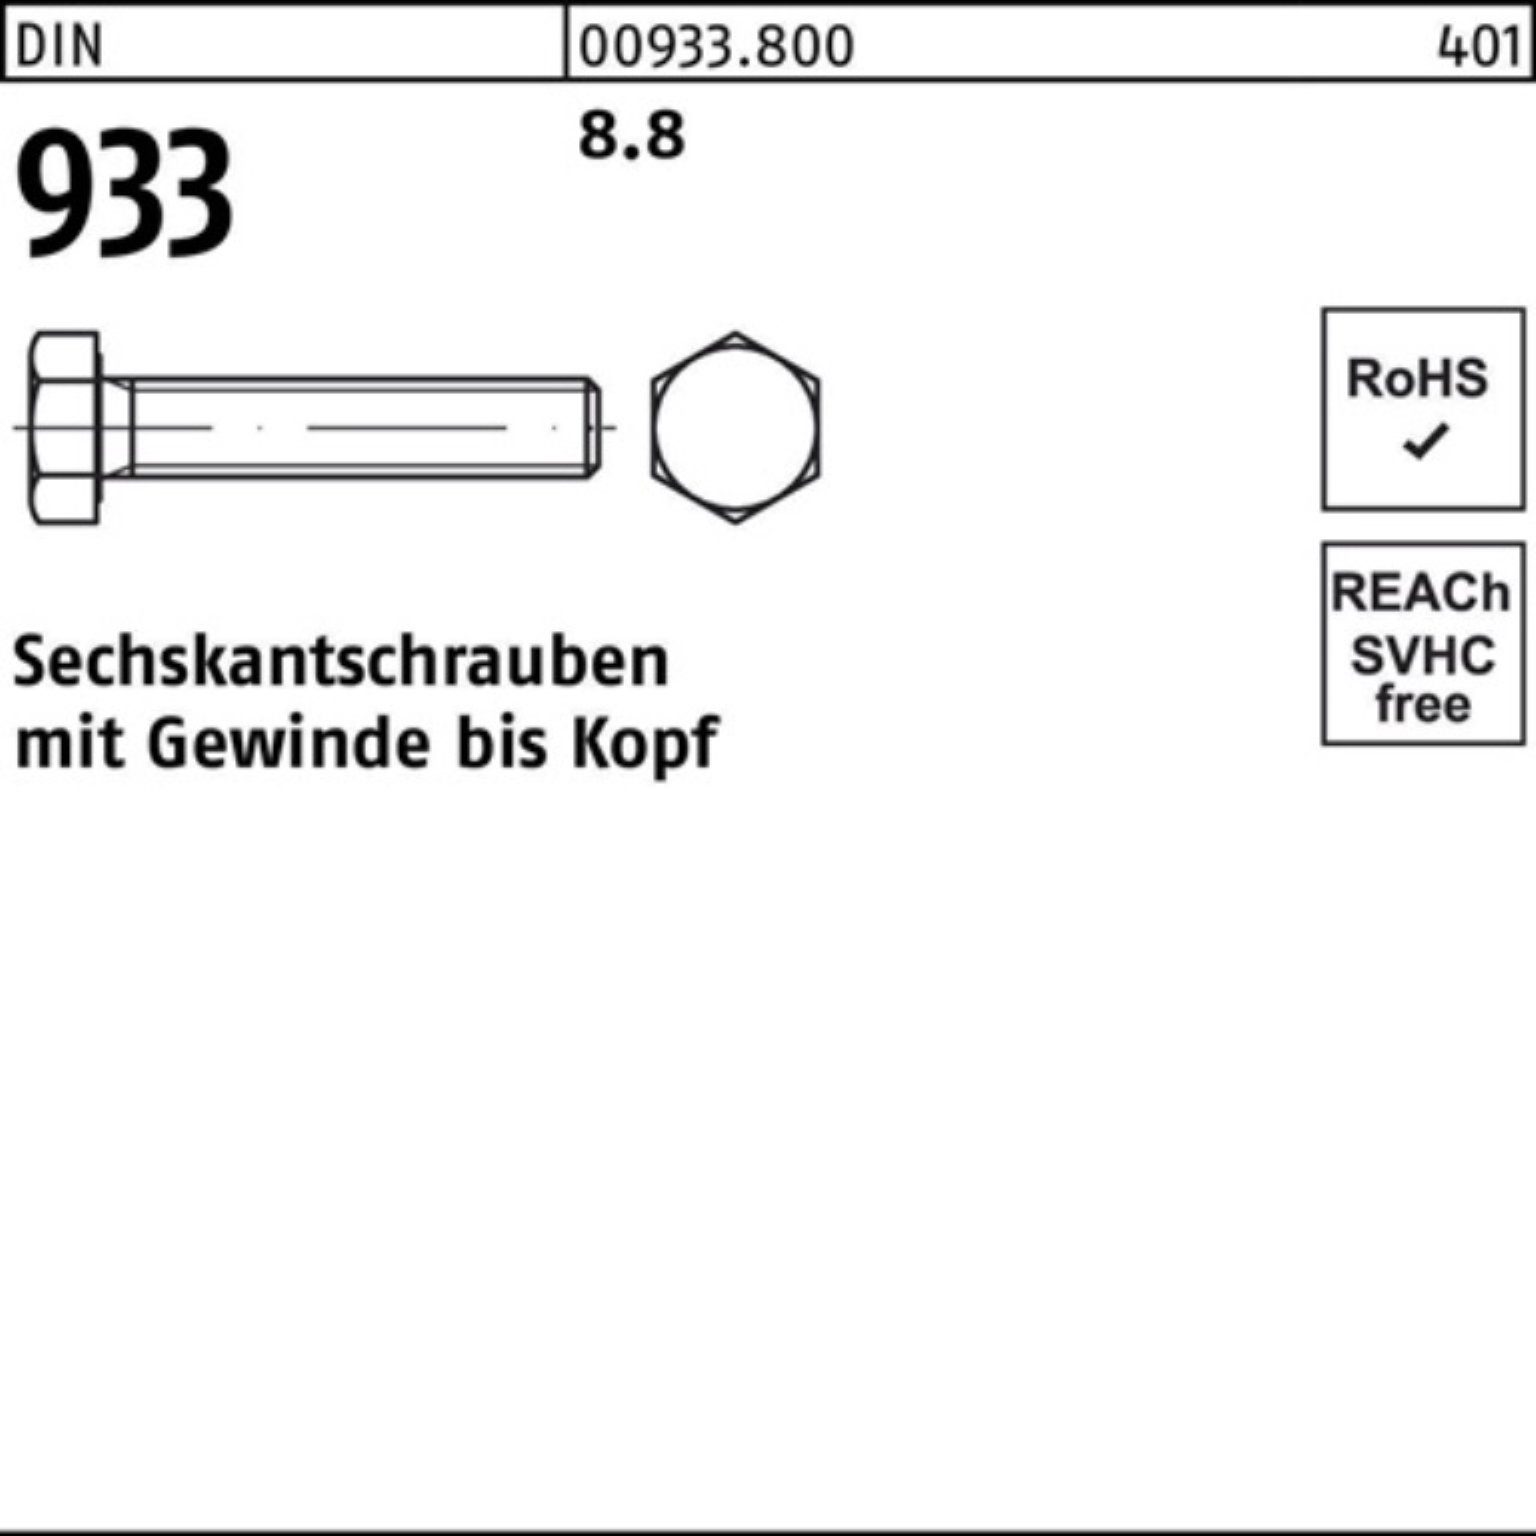 Reyher Sechskantschraube 933 DIN 8.8 933 12 DIN VG 100er Pack Sechskantschraube 100 M12x Stück